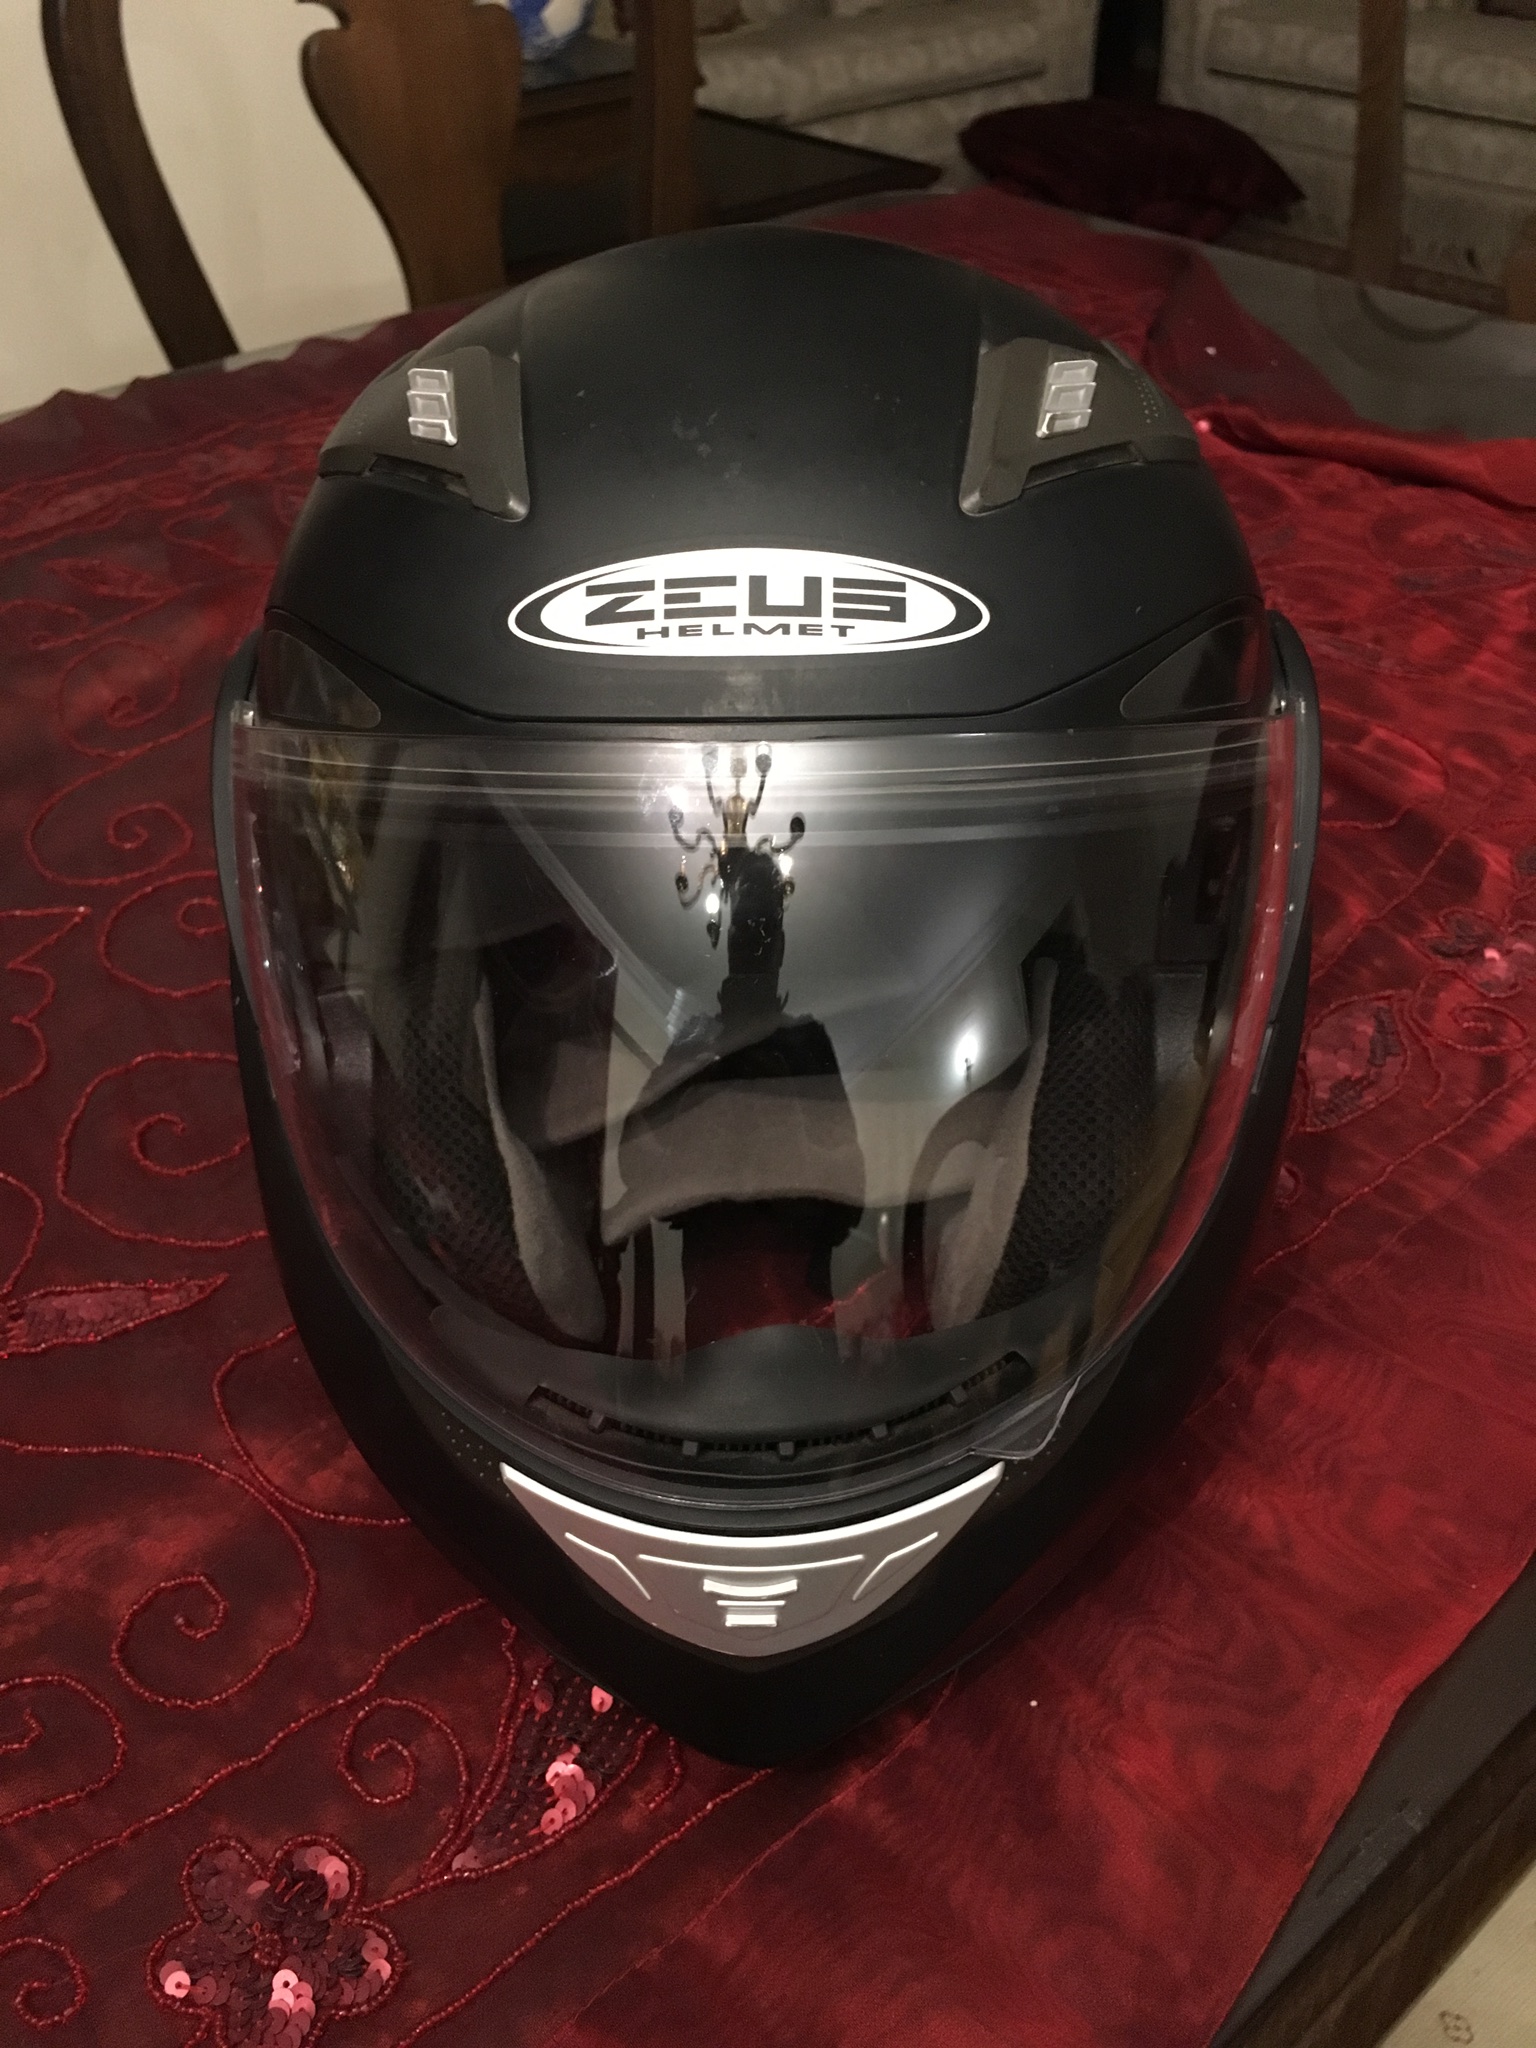 Zeus bluetooth -  Helmet - Helmet